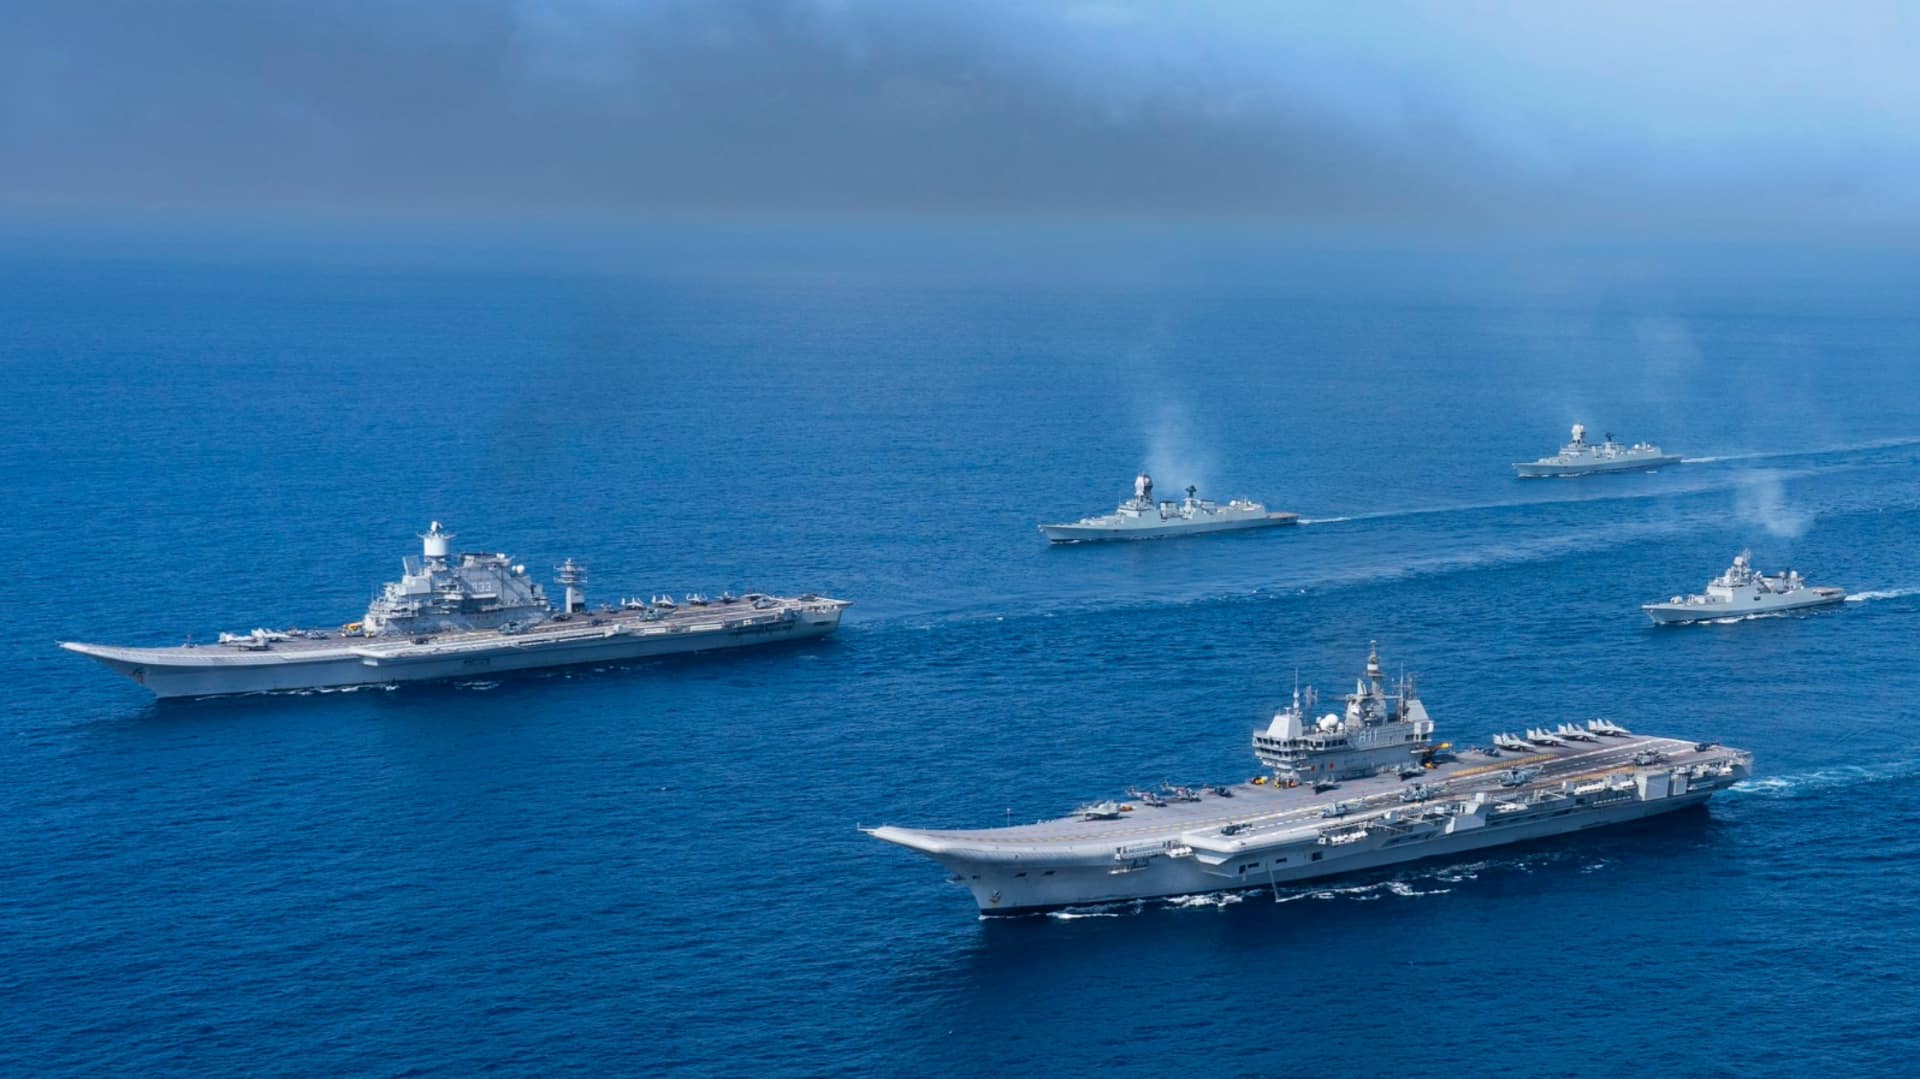 भारतीय नौसेना ने हिंद महासागर में तैनात किए 35 युद्धपोत और 10 पनडुब्बियां